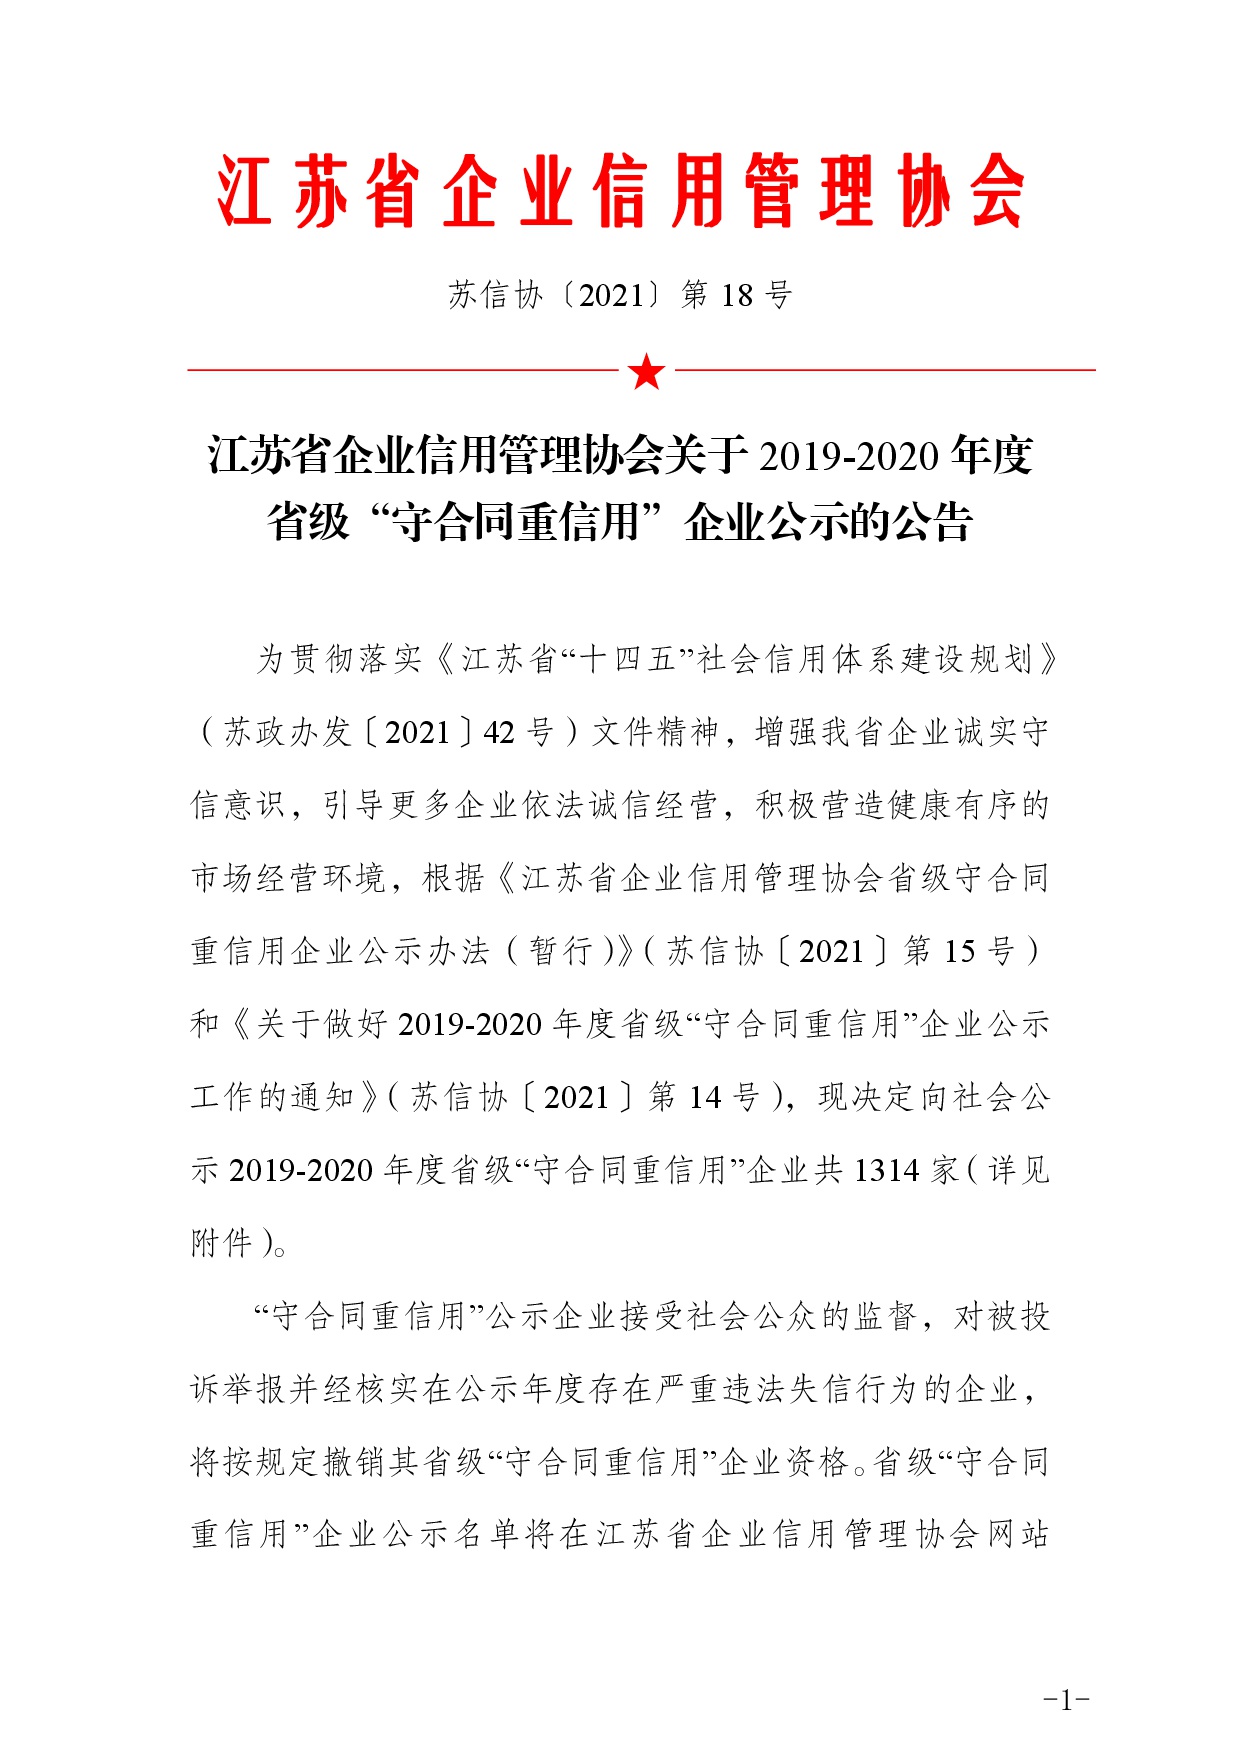 江苏省企业信用管理协会关于 2019-2020 年度 省级“守合同重信用” 企业公示的公告